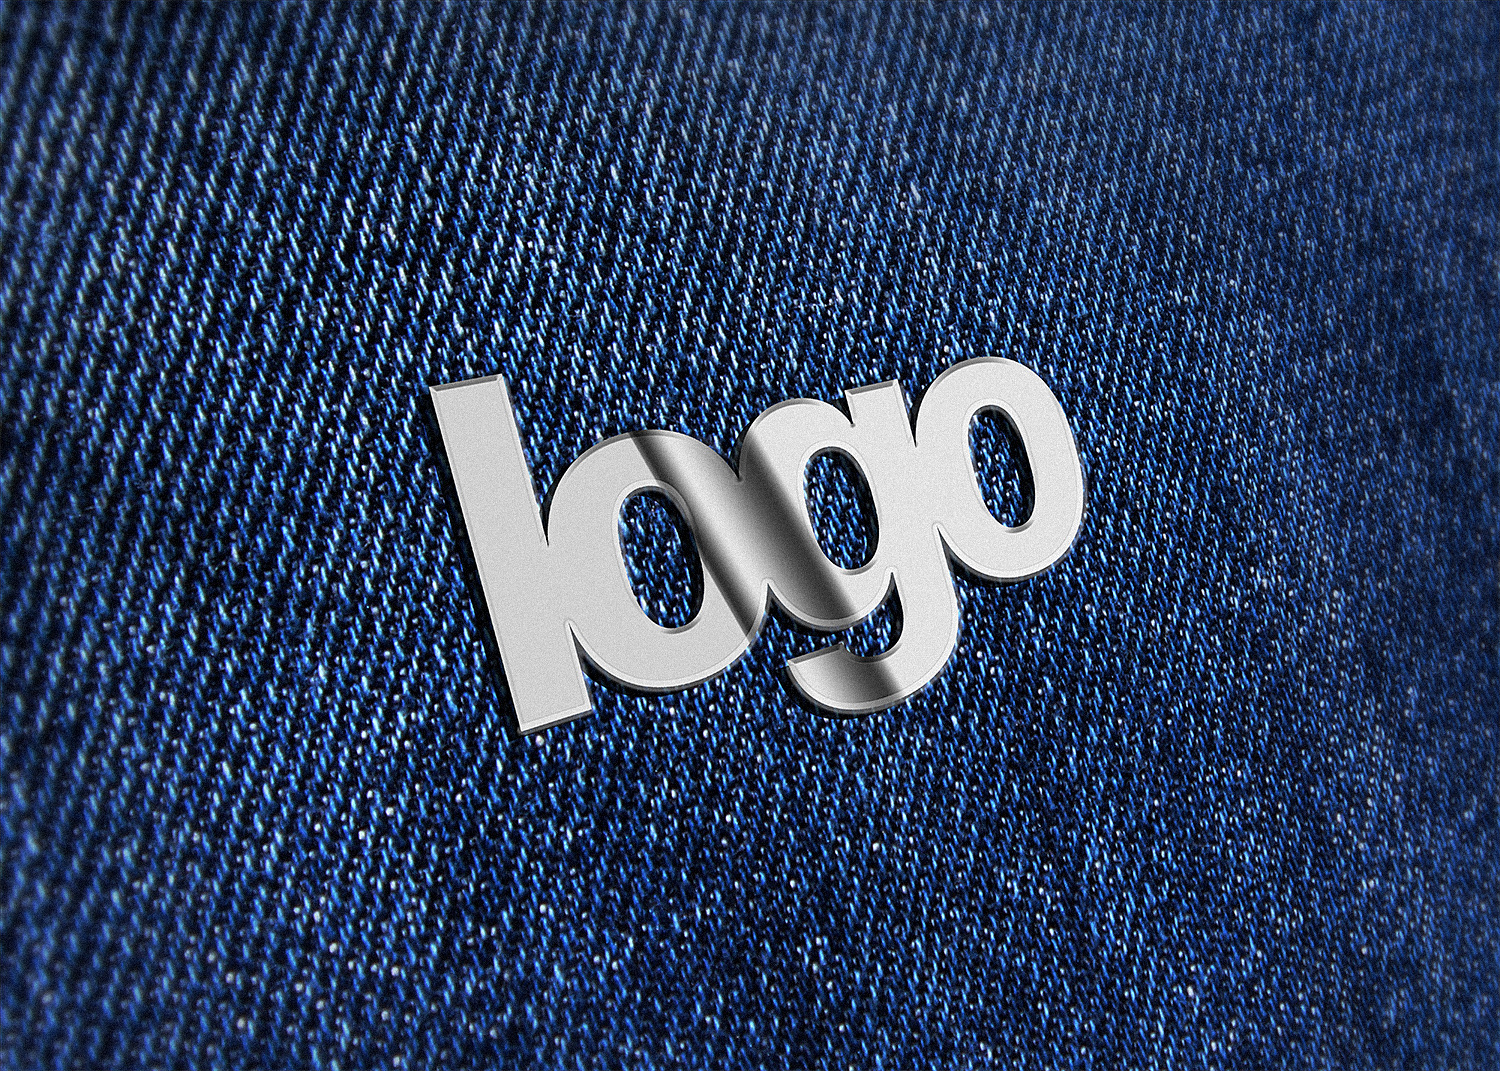 Free Branding Logo Mockup Set in PSD